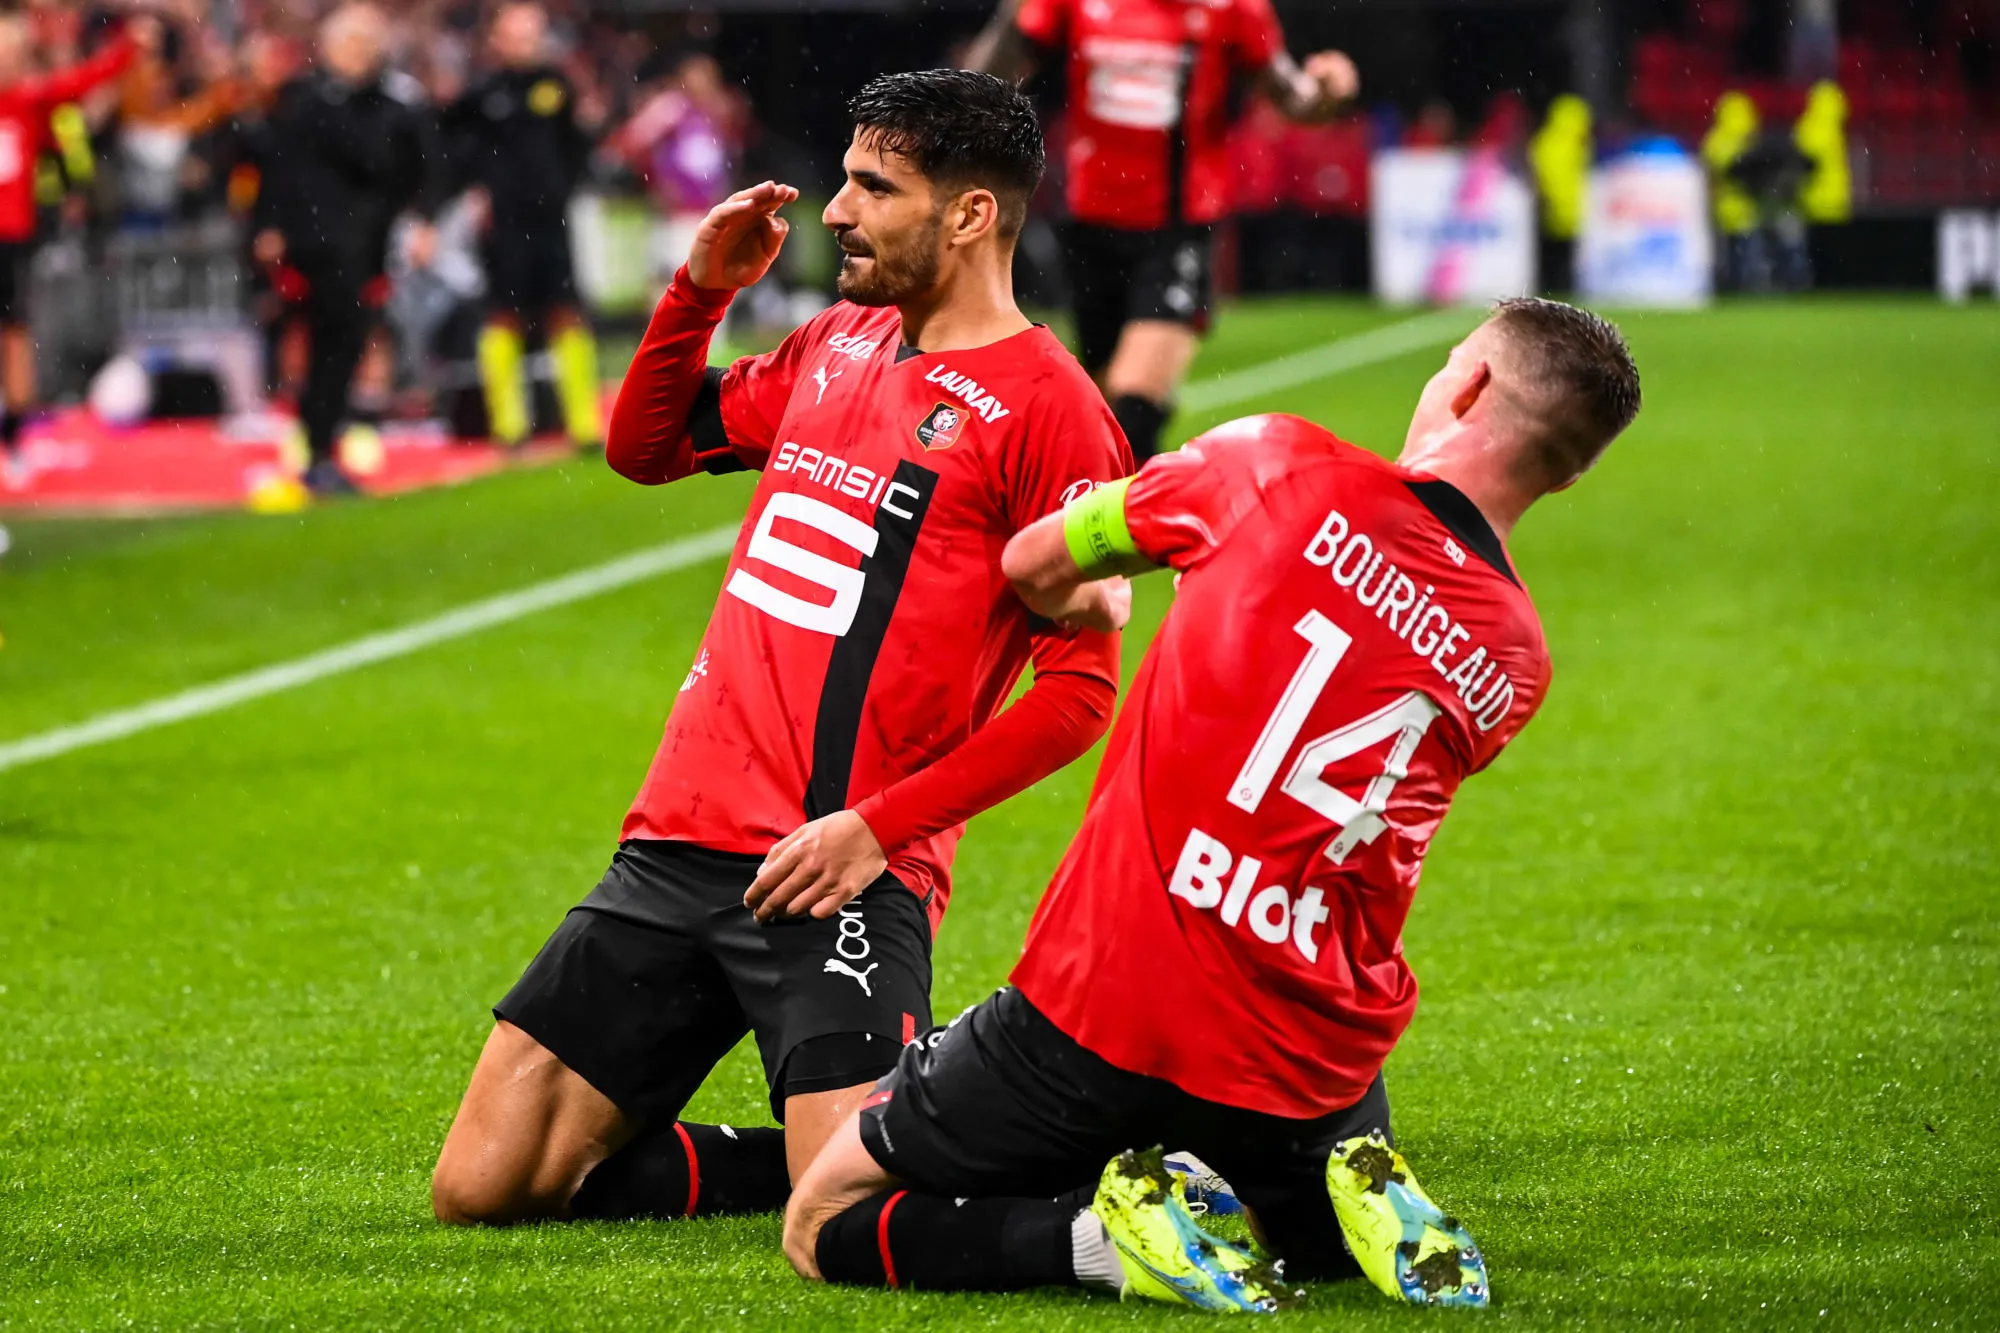 Pronostic Rennes Dynamo Kiev : Analyse, cotes et prono du match de Ligue Europa